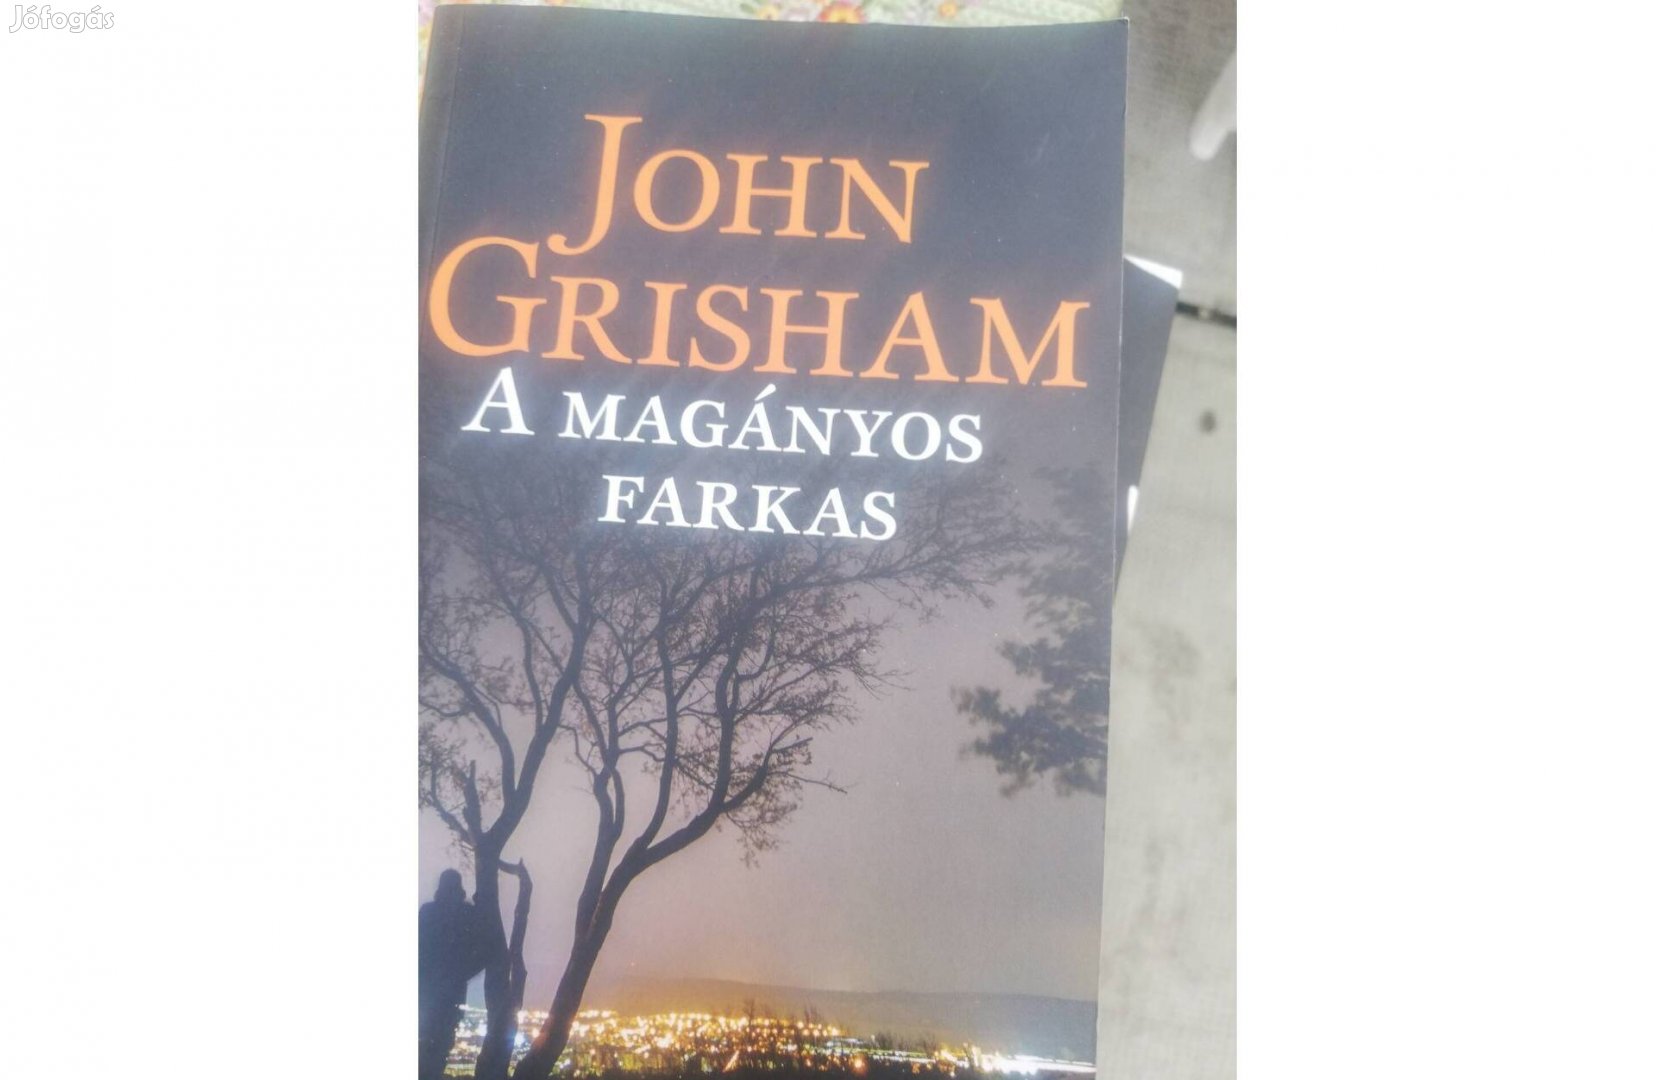 John Grisham A magányos farkas 1500 forintért eladó